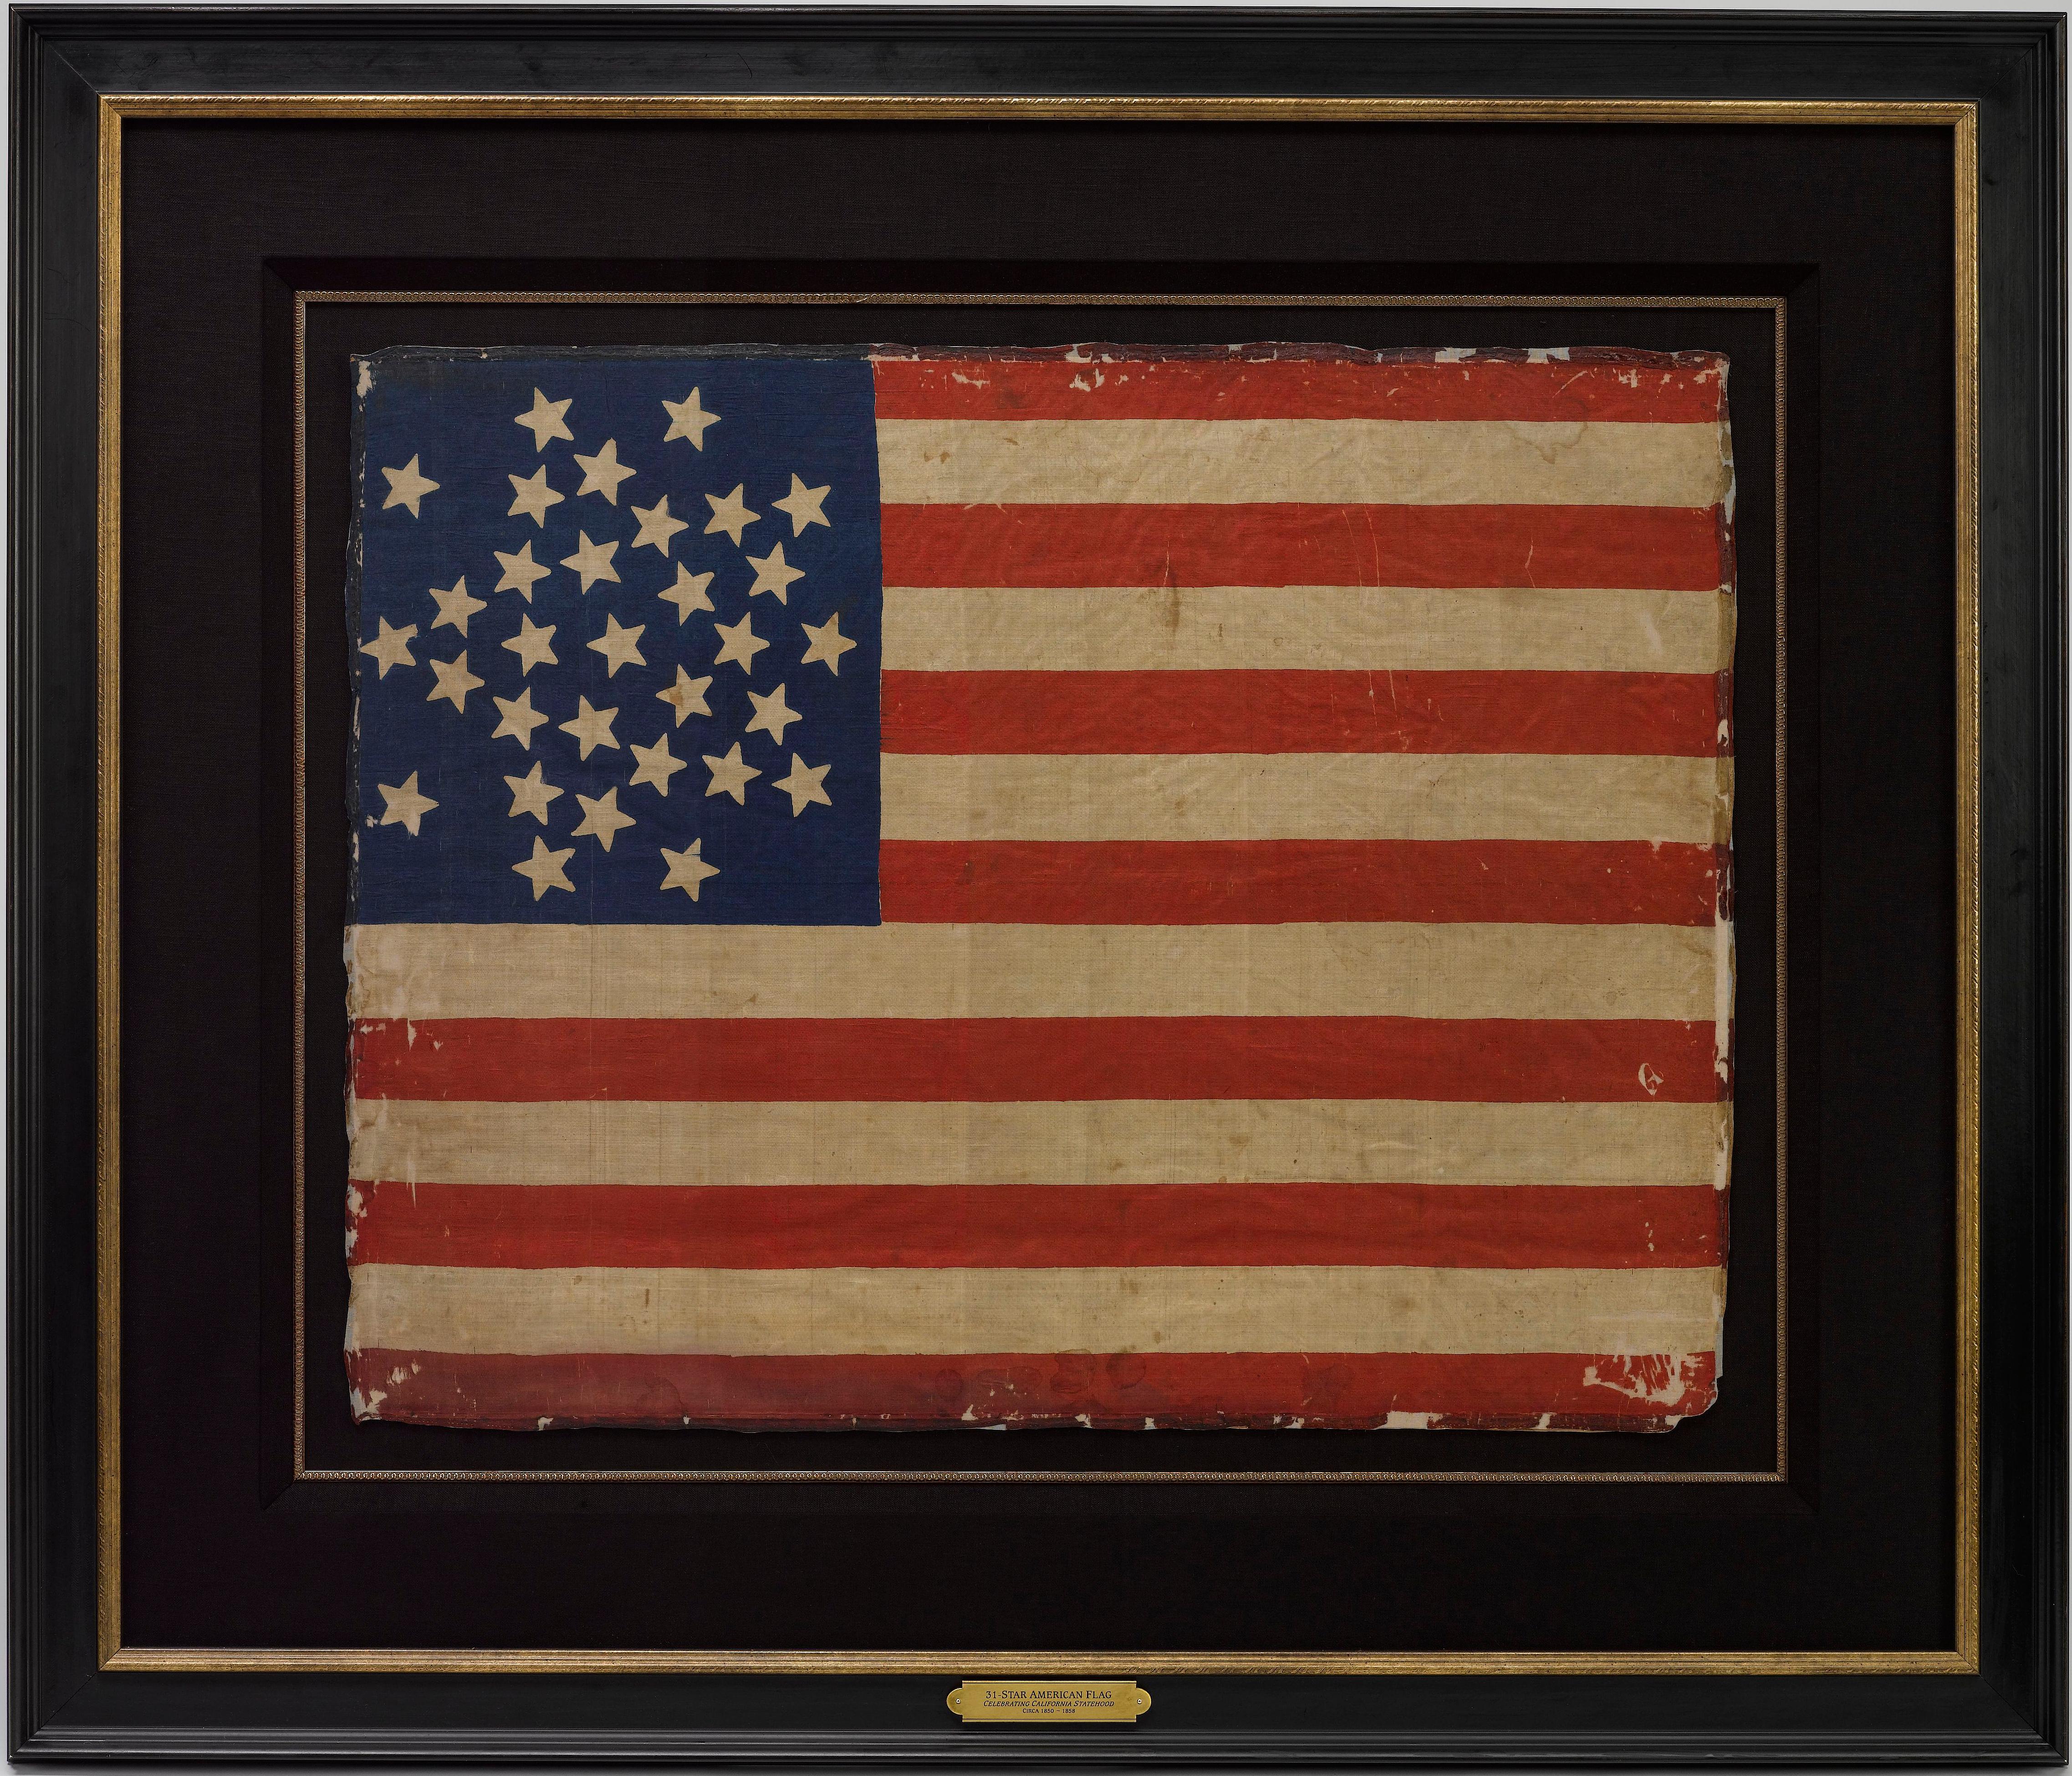 Dies ist eine seltene, mit 31 Sternen bedruckte amerikanische Flagge, mit der die Aufnahme Kaliforniens in die Union gefeiert wird. Die Flagge ist auf Seide gedruckt und hat ein spektakuläres 